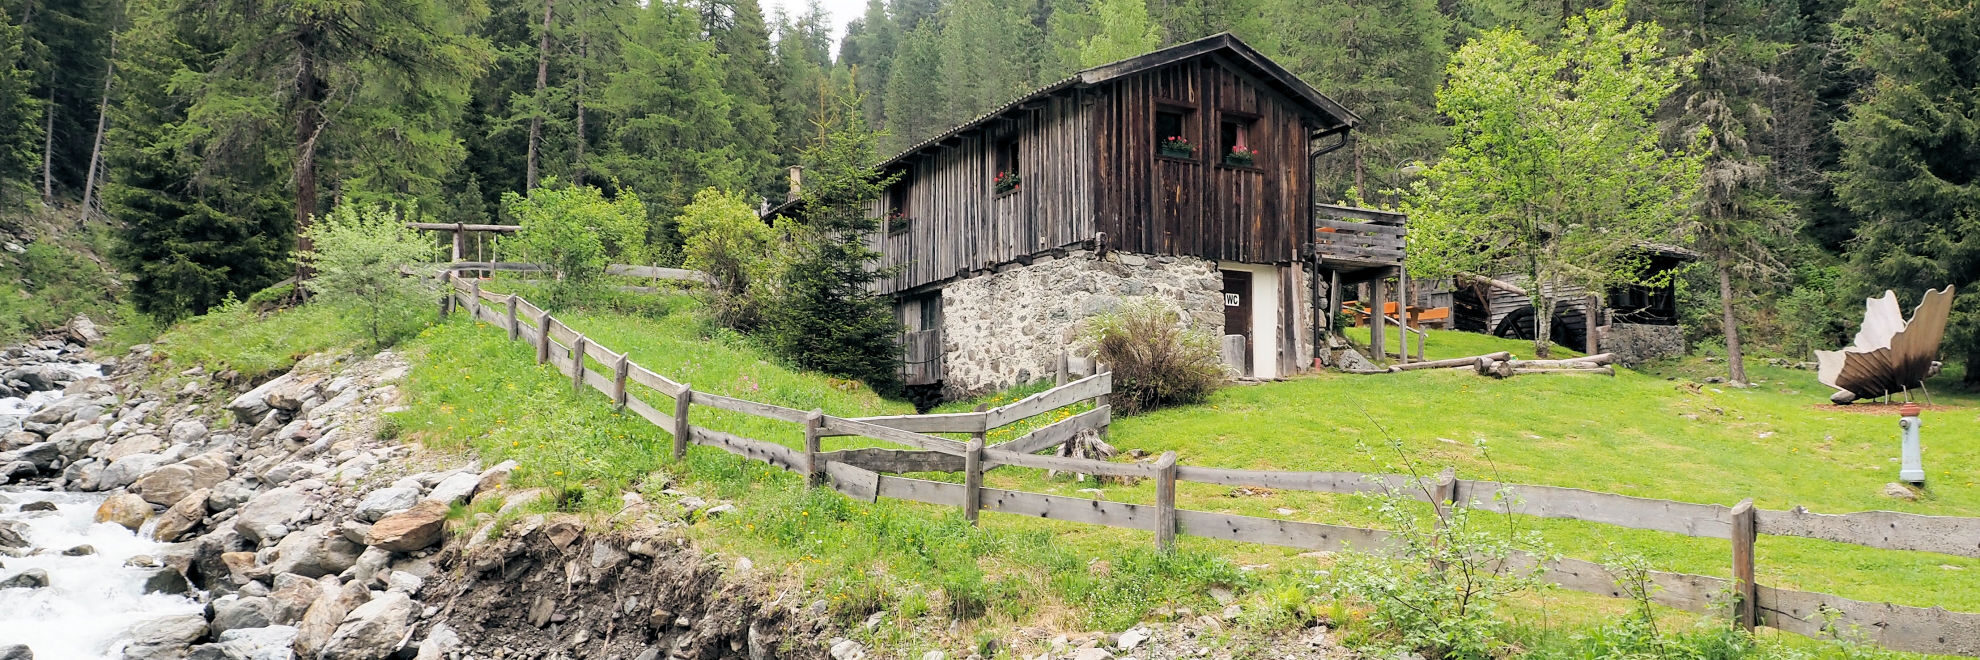 Reinswald: Wanderweg 7a zu den Reinswalder Mühlen